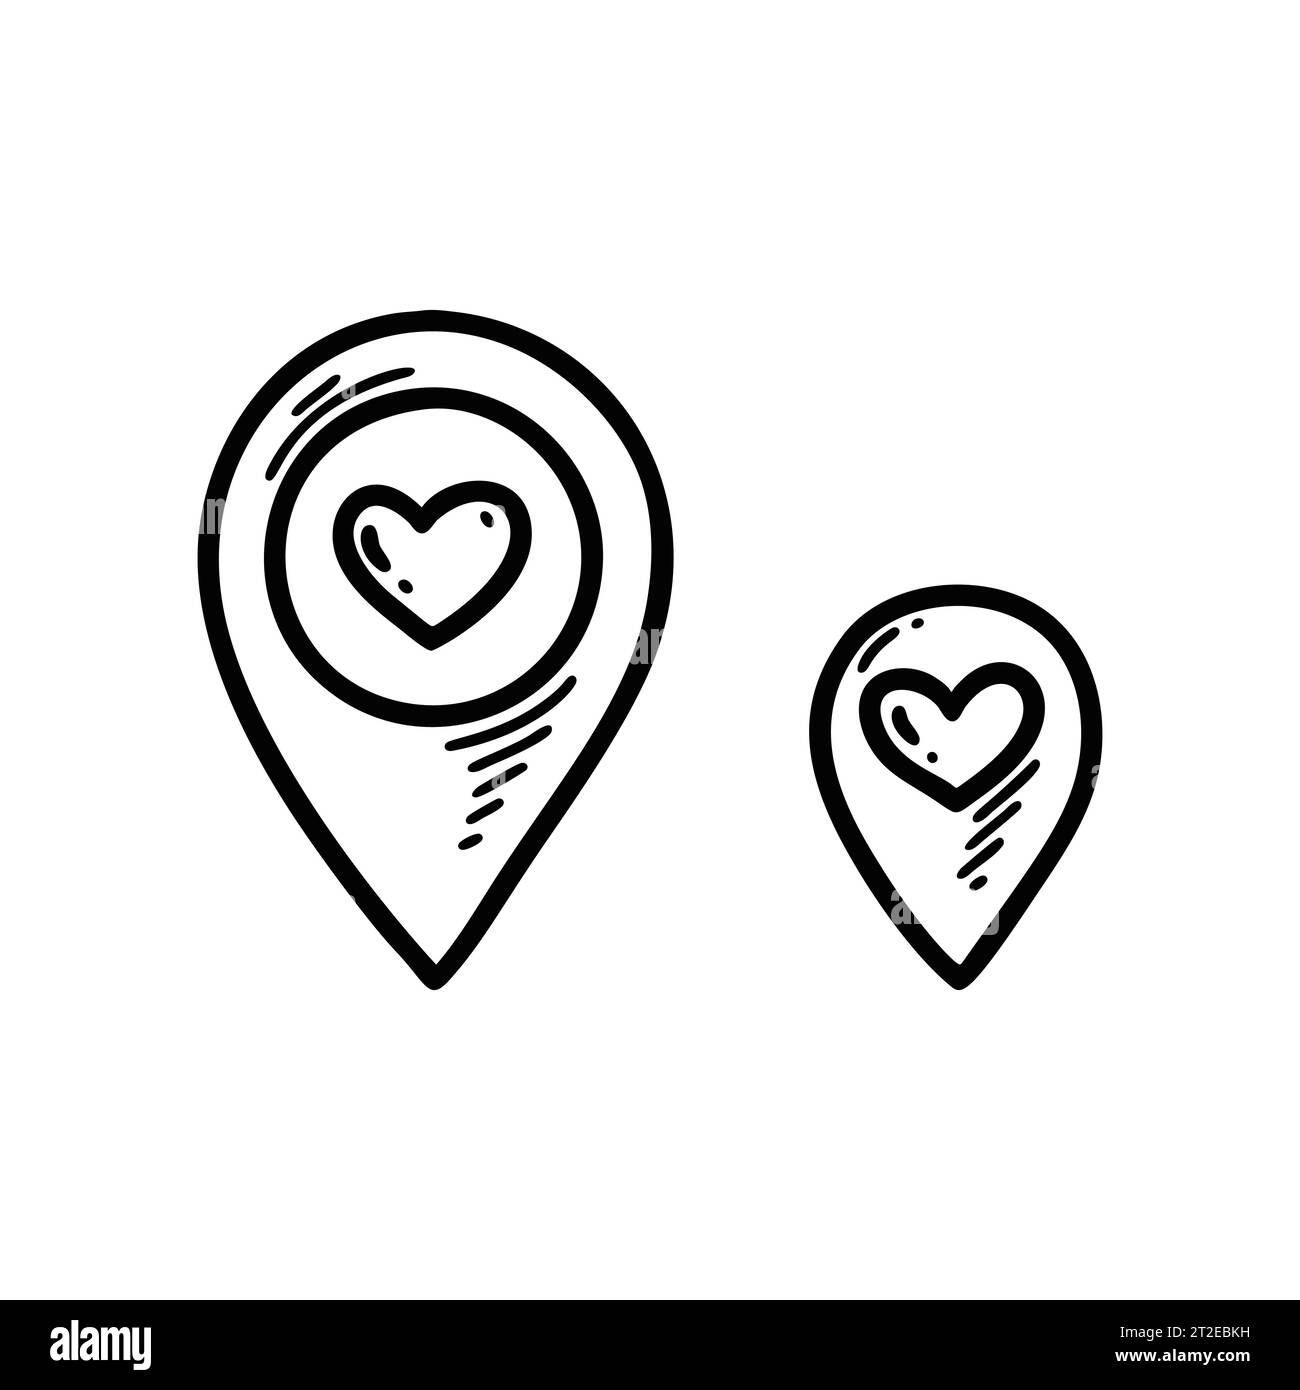 PIN de ubicación del doodle de corazón. Coloque el marcador de amor y cuidado gore. Dirección de mapa de voluntariado. Dibujado a mano boceto Día de San Valentín geotag Ilustración del Vector